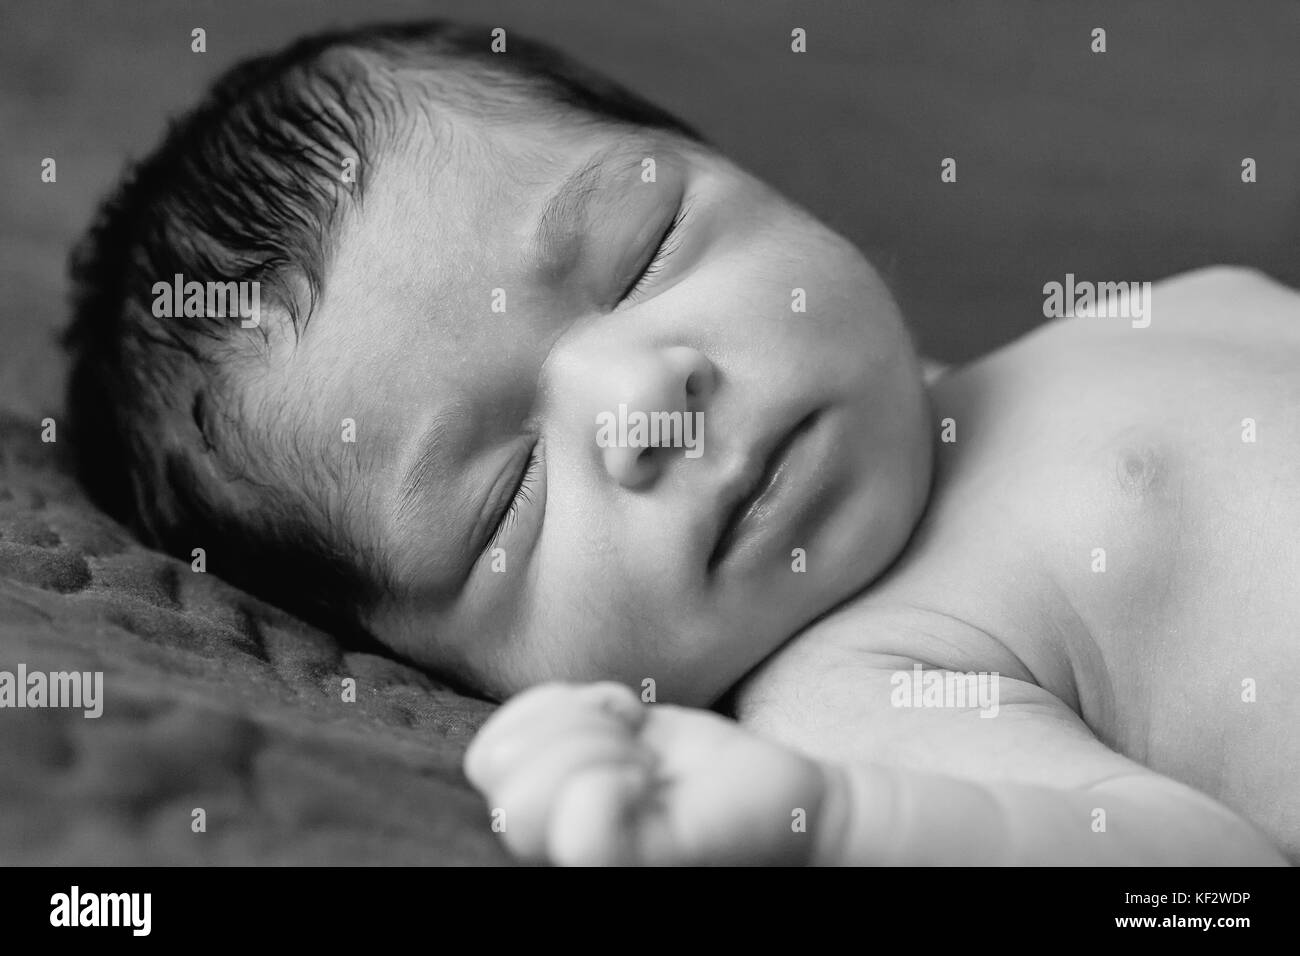 Gros plan portrait d'une petite fille de deux semaines de nouveau-né sans vêtements, nu ou nu, dormant paisiblement dans le lit Banque D'Images